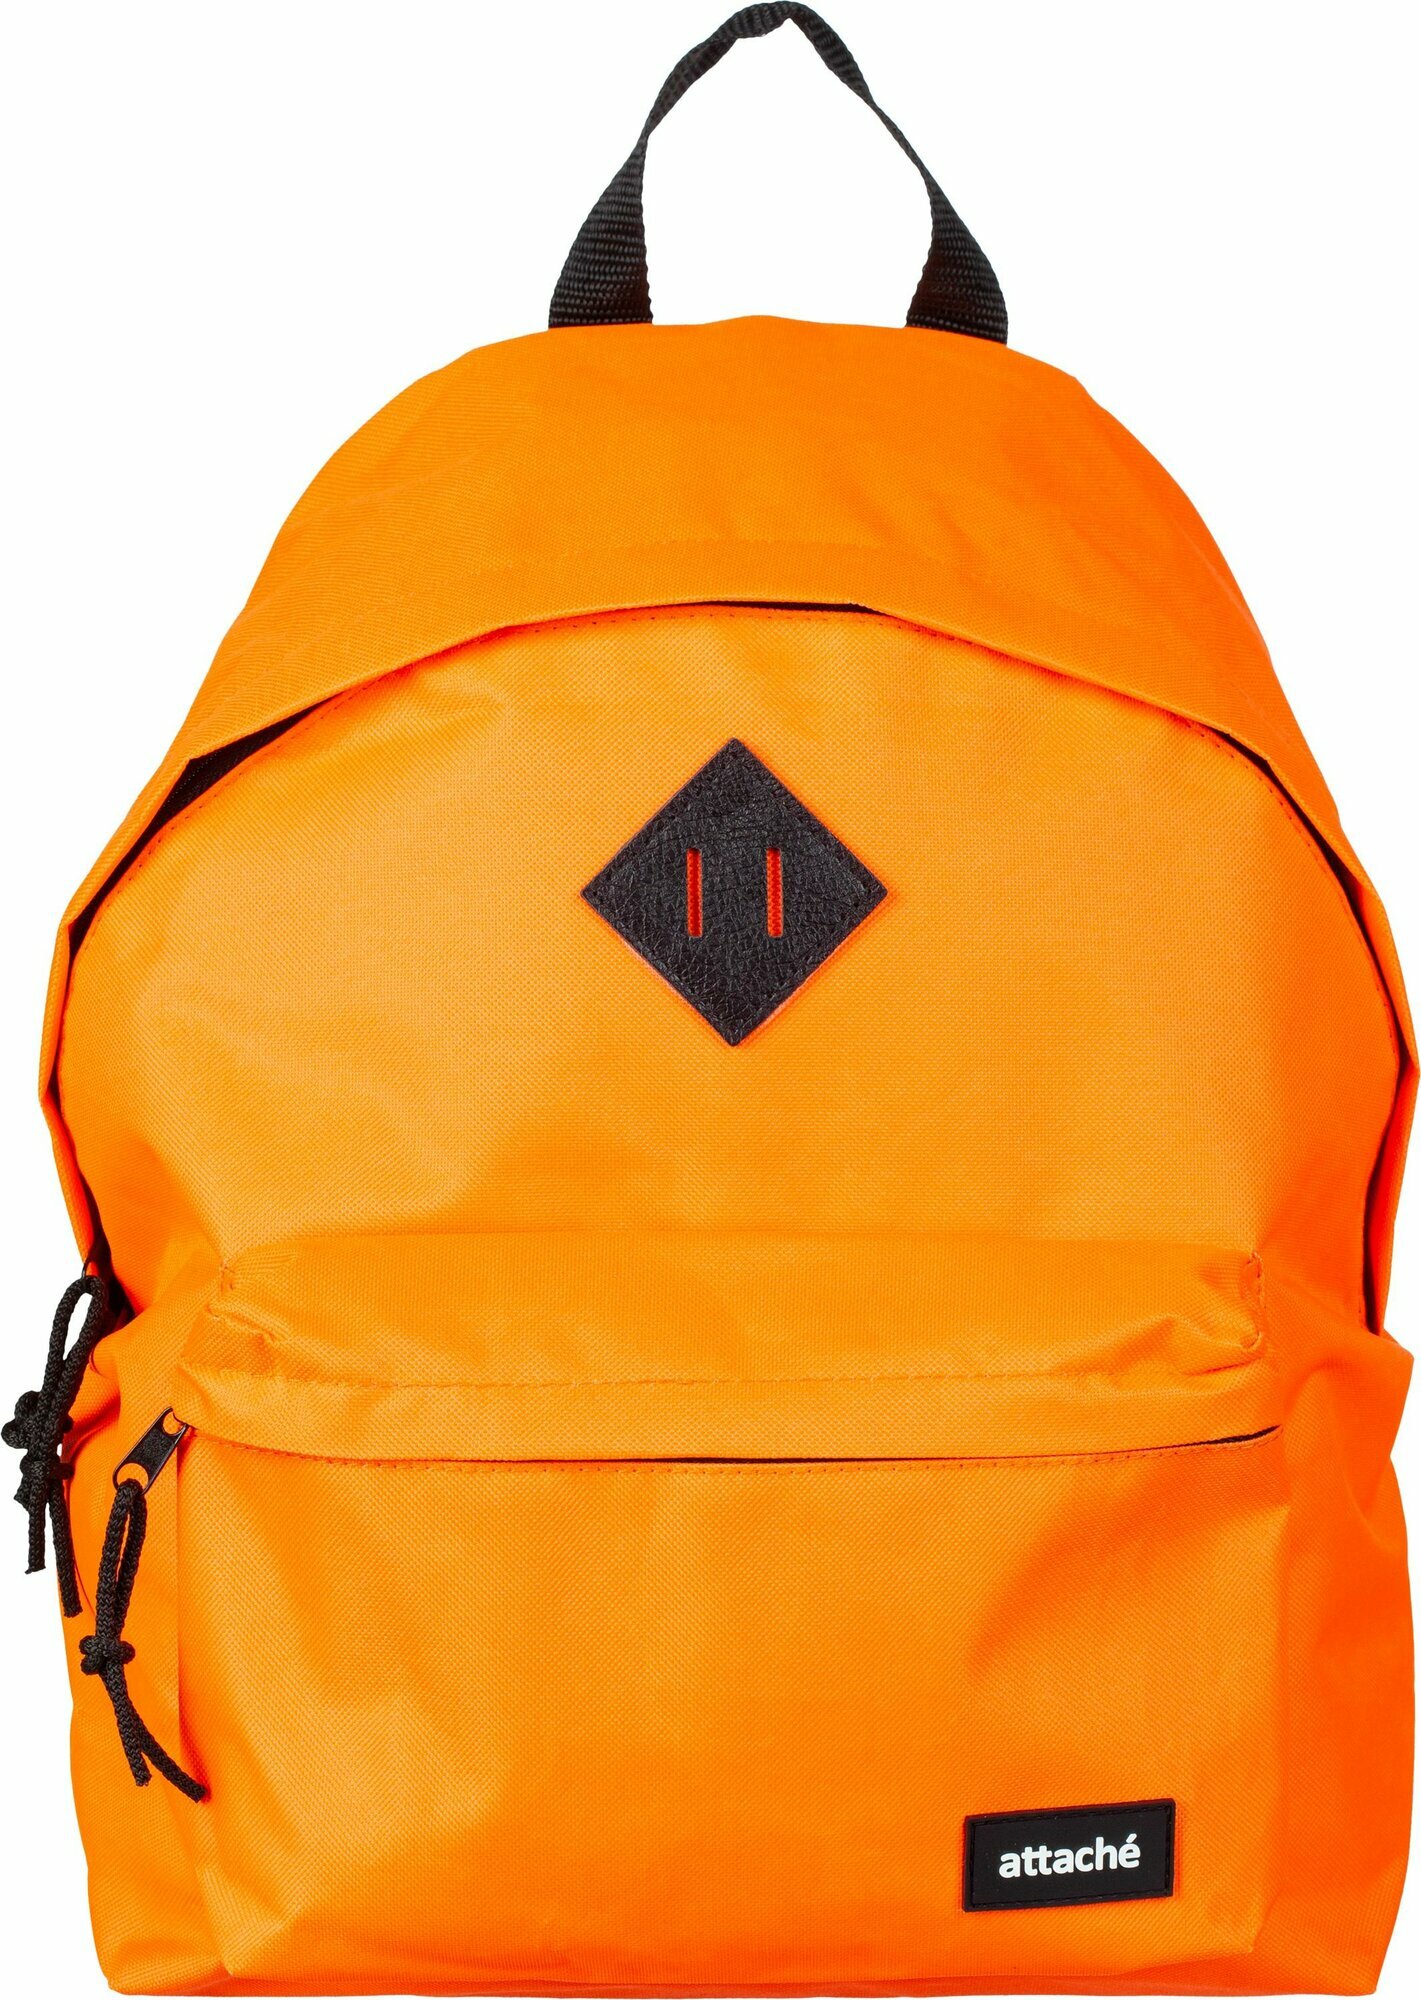 Рюкзак Attache Neon универсальный оранжевый, размер 300x140x390